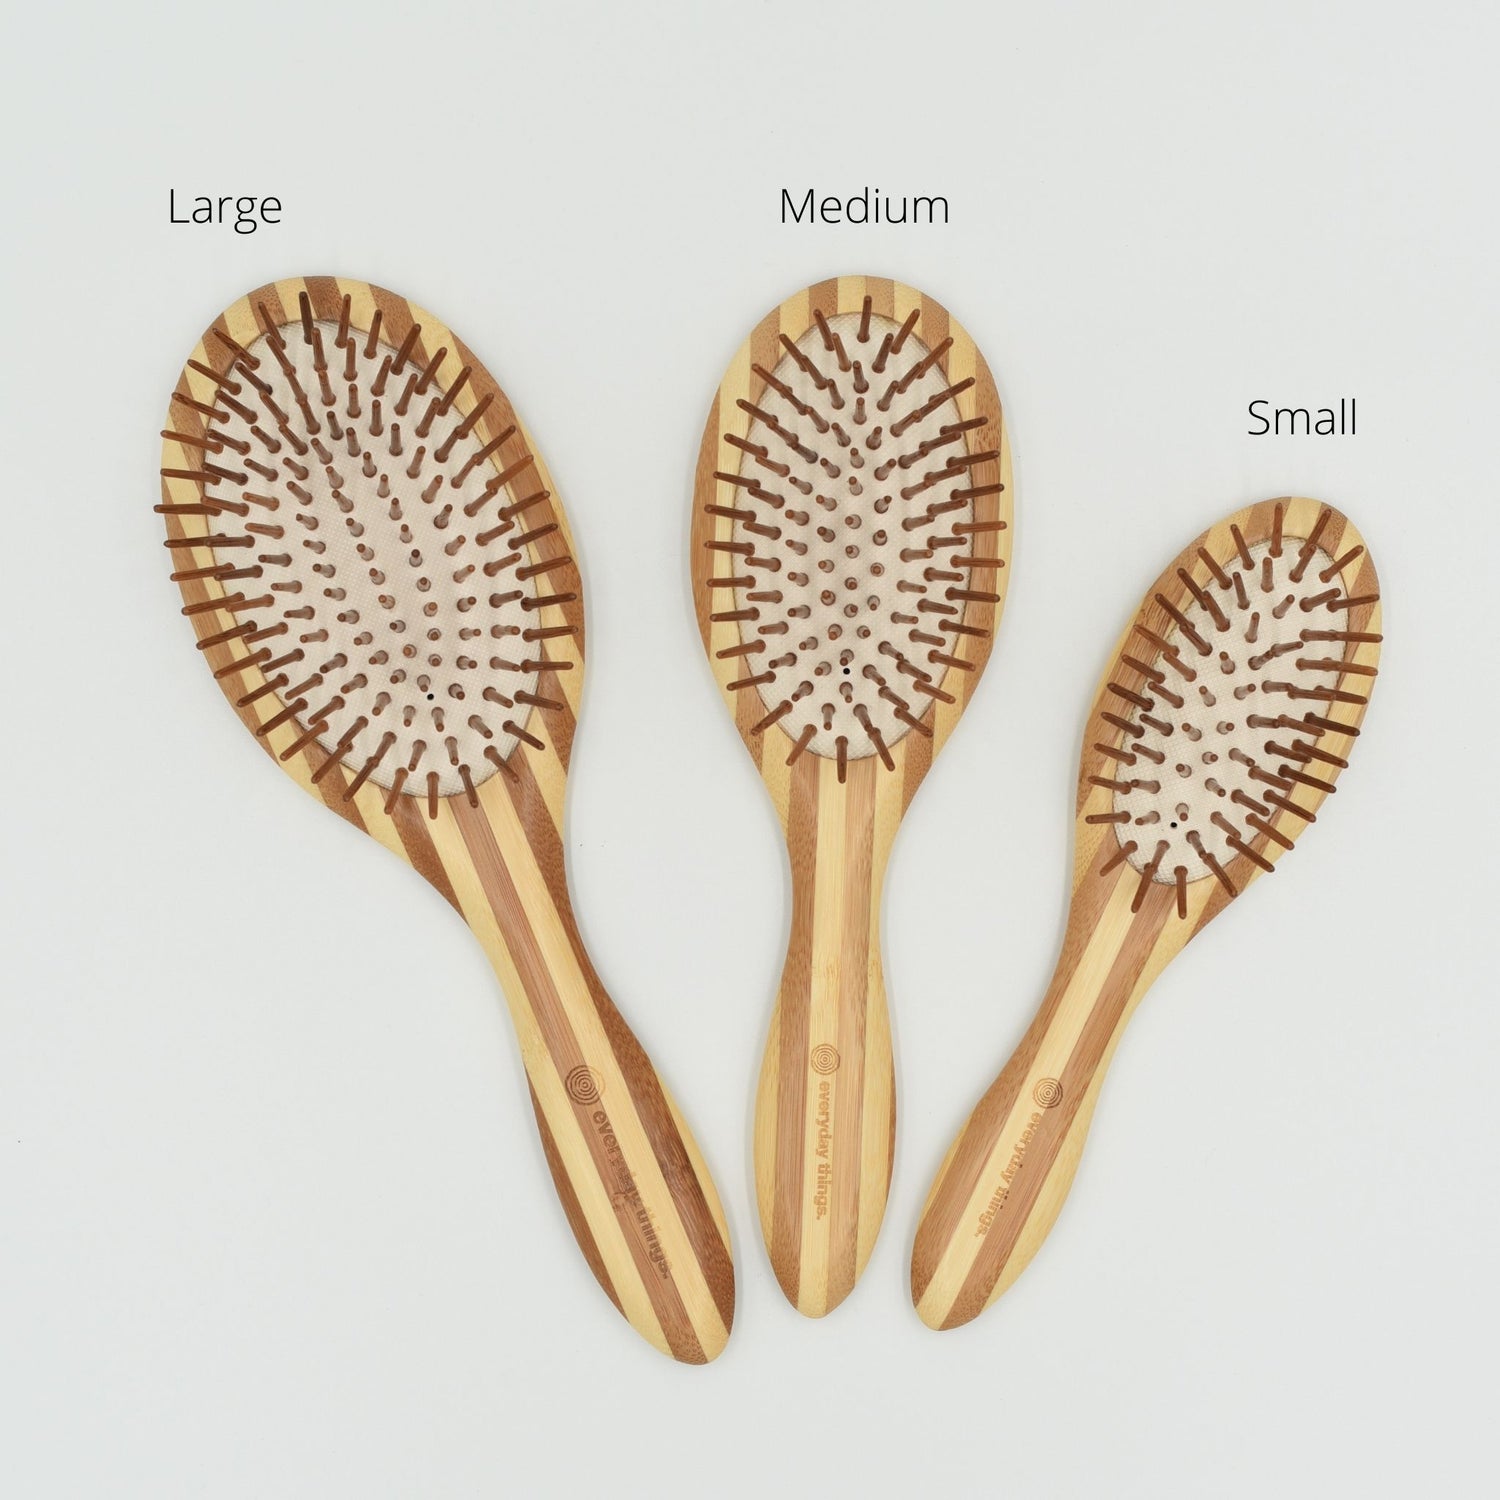 Bamboo hairbrush in three sizes